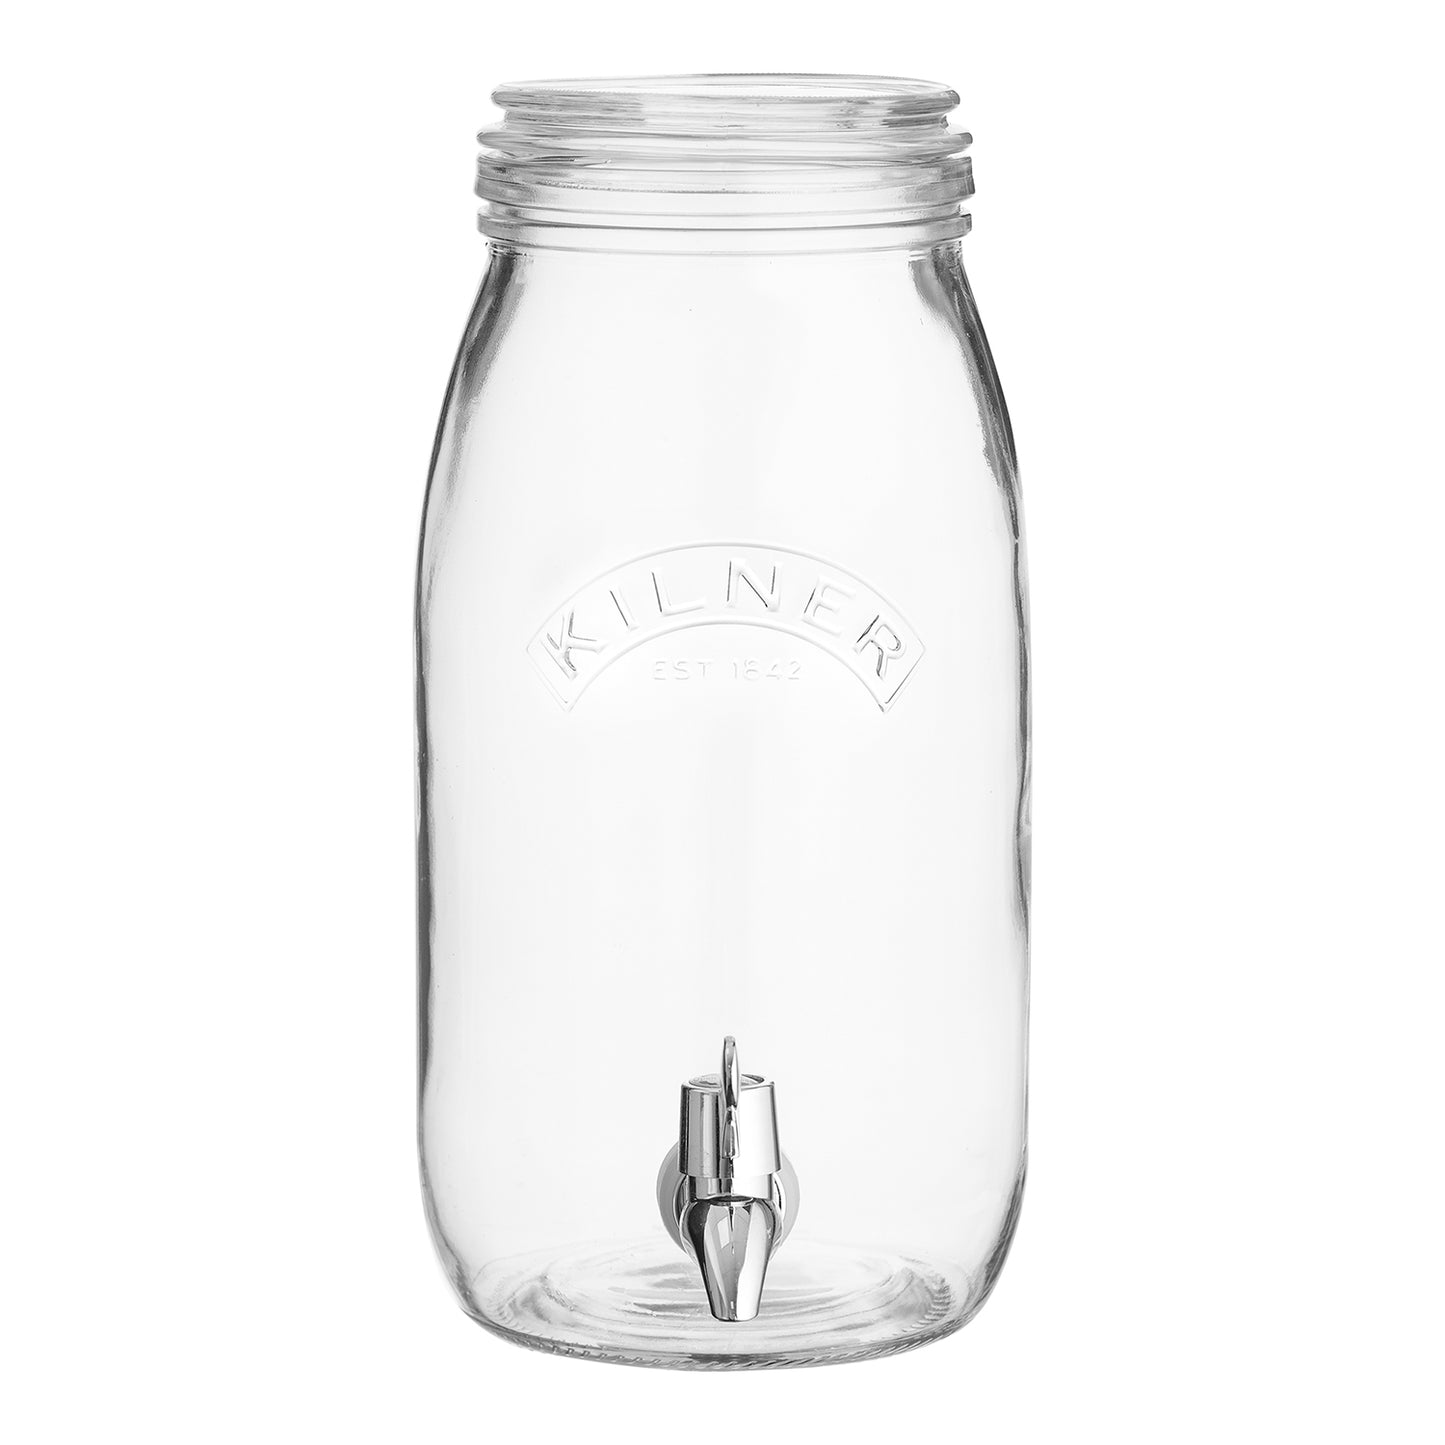 Getränkespender "Einmachglas" | 3 Liter